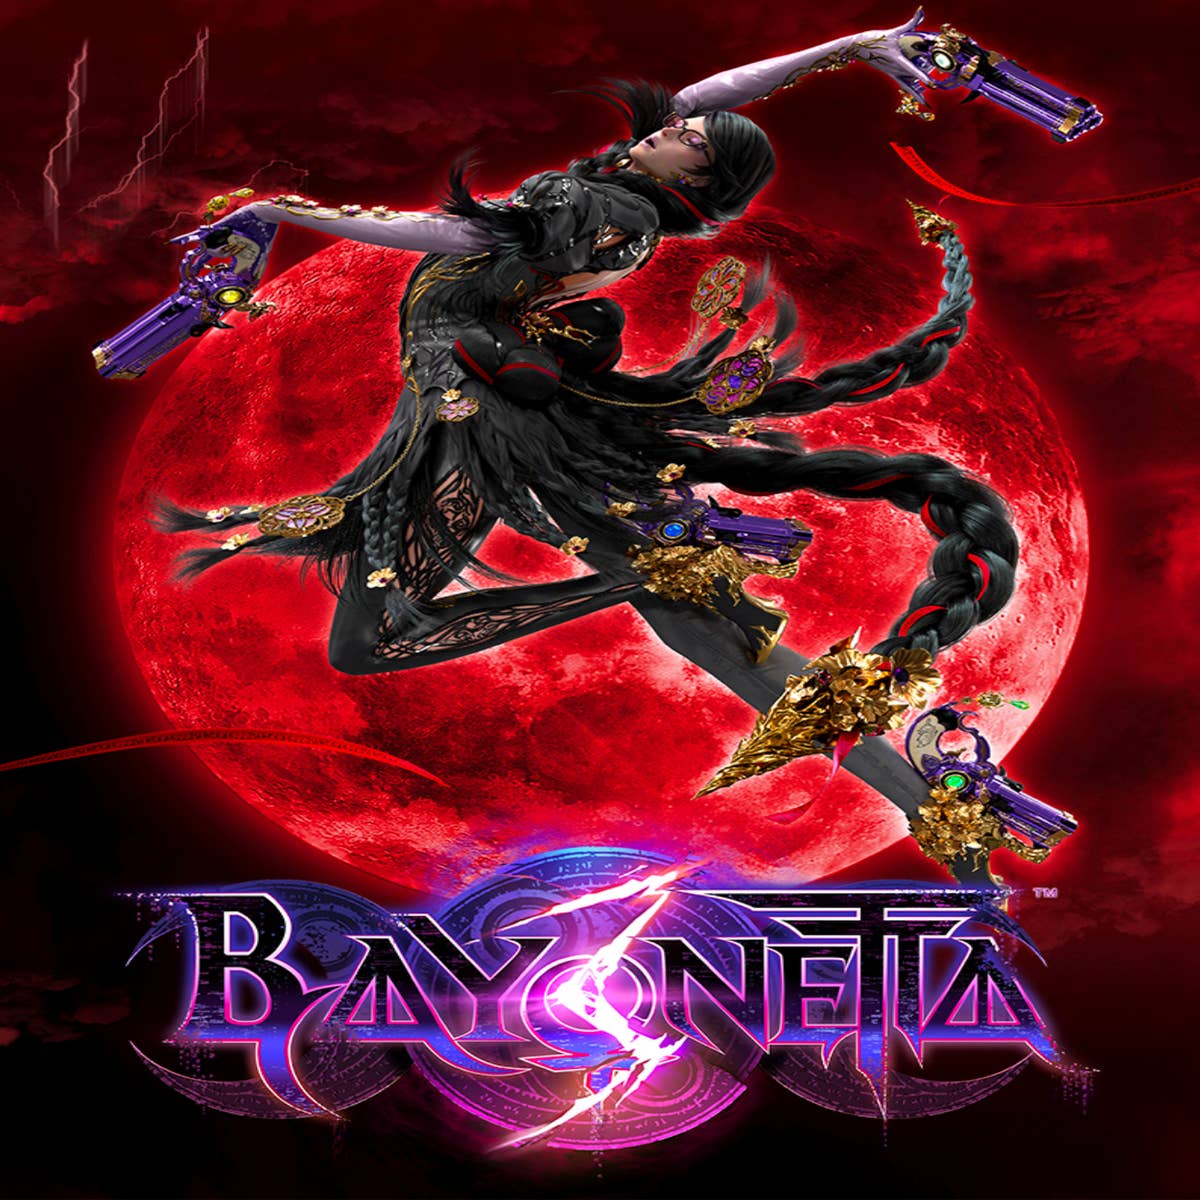 Bayonetta 3 saldrá el 28 de octubre de 2022 para Nintendo Switch